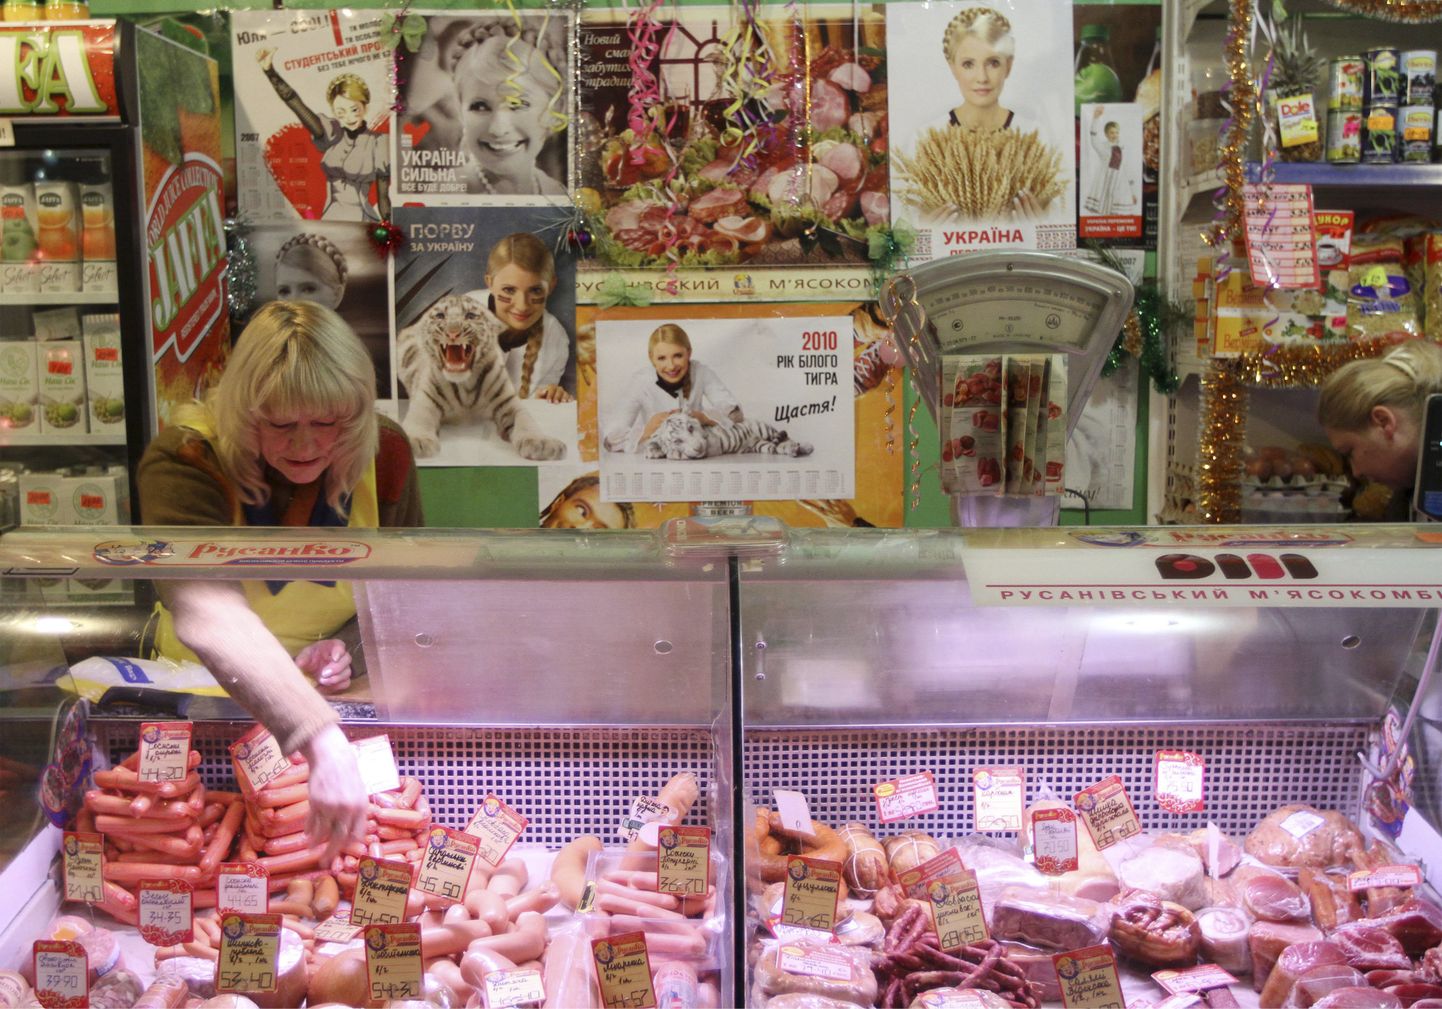 Kiievi lihapoe müüja eelistus saab selgeks riiulitevahelisele seinale kleebitud plakateid uurides.